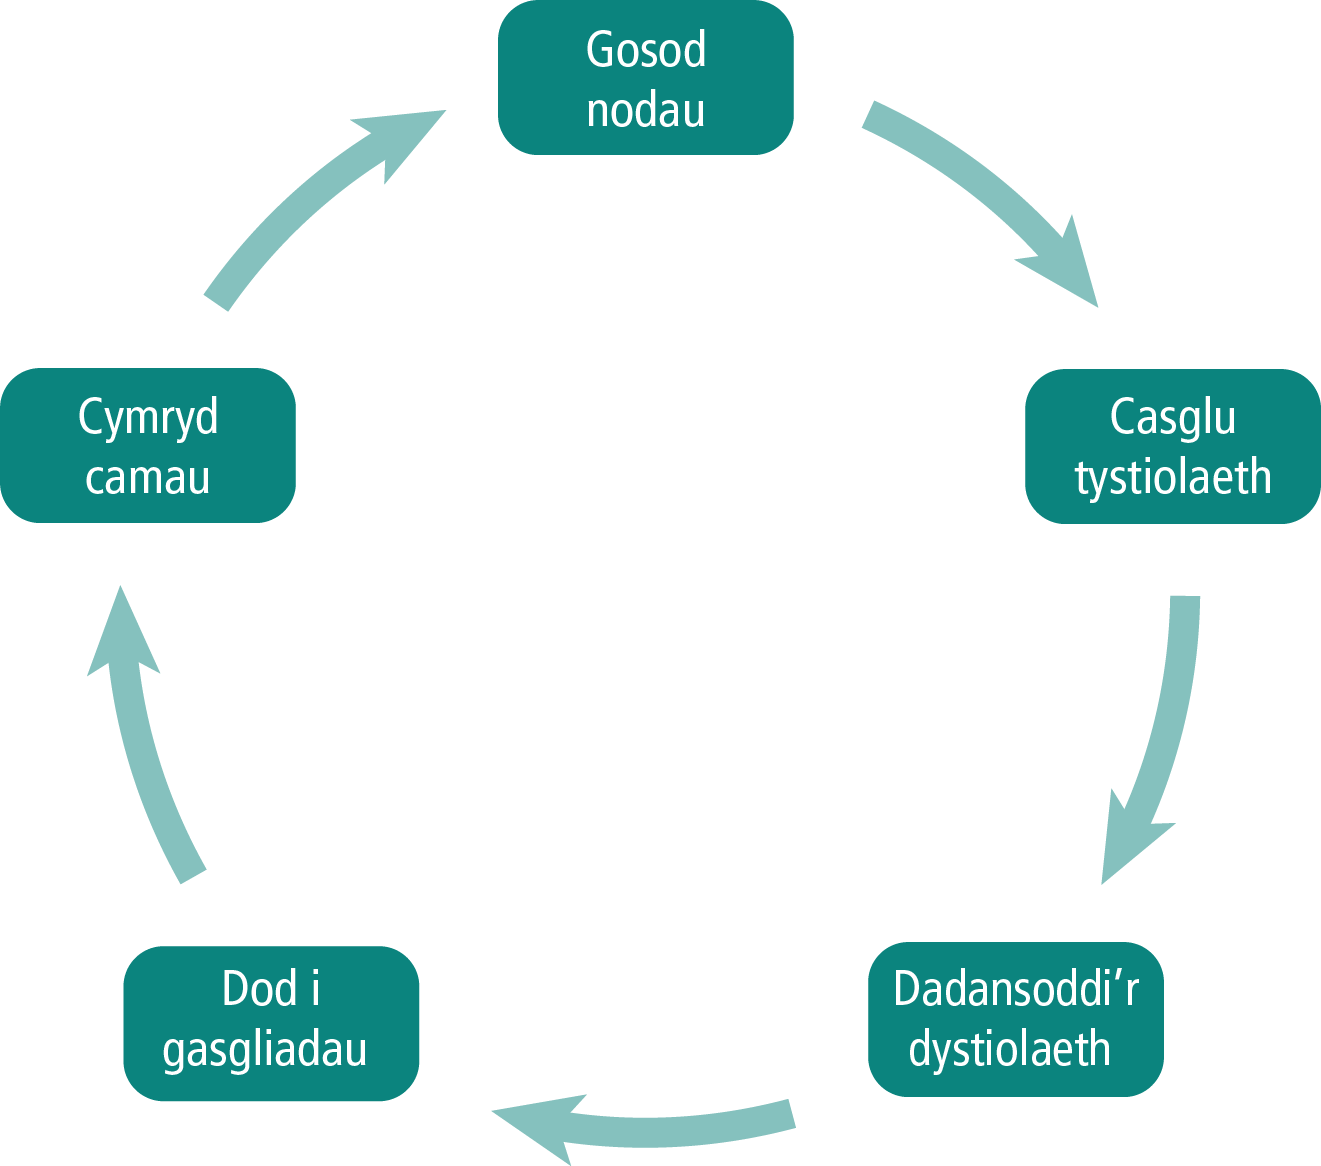 Diagram cylchol yn dangos y broses o fonitro a gwerthuso i osod nodau, casglu a dadansoddi tystiolaeth, dod i gasgliadau a chymryd camau.